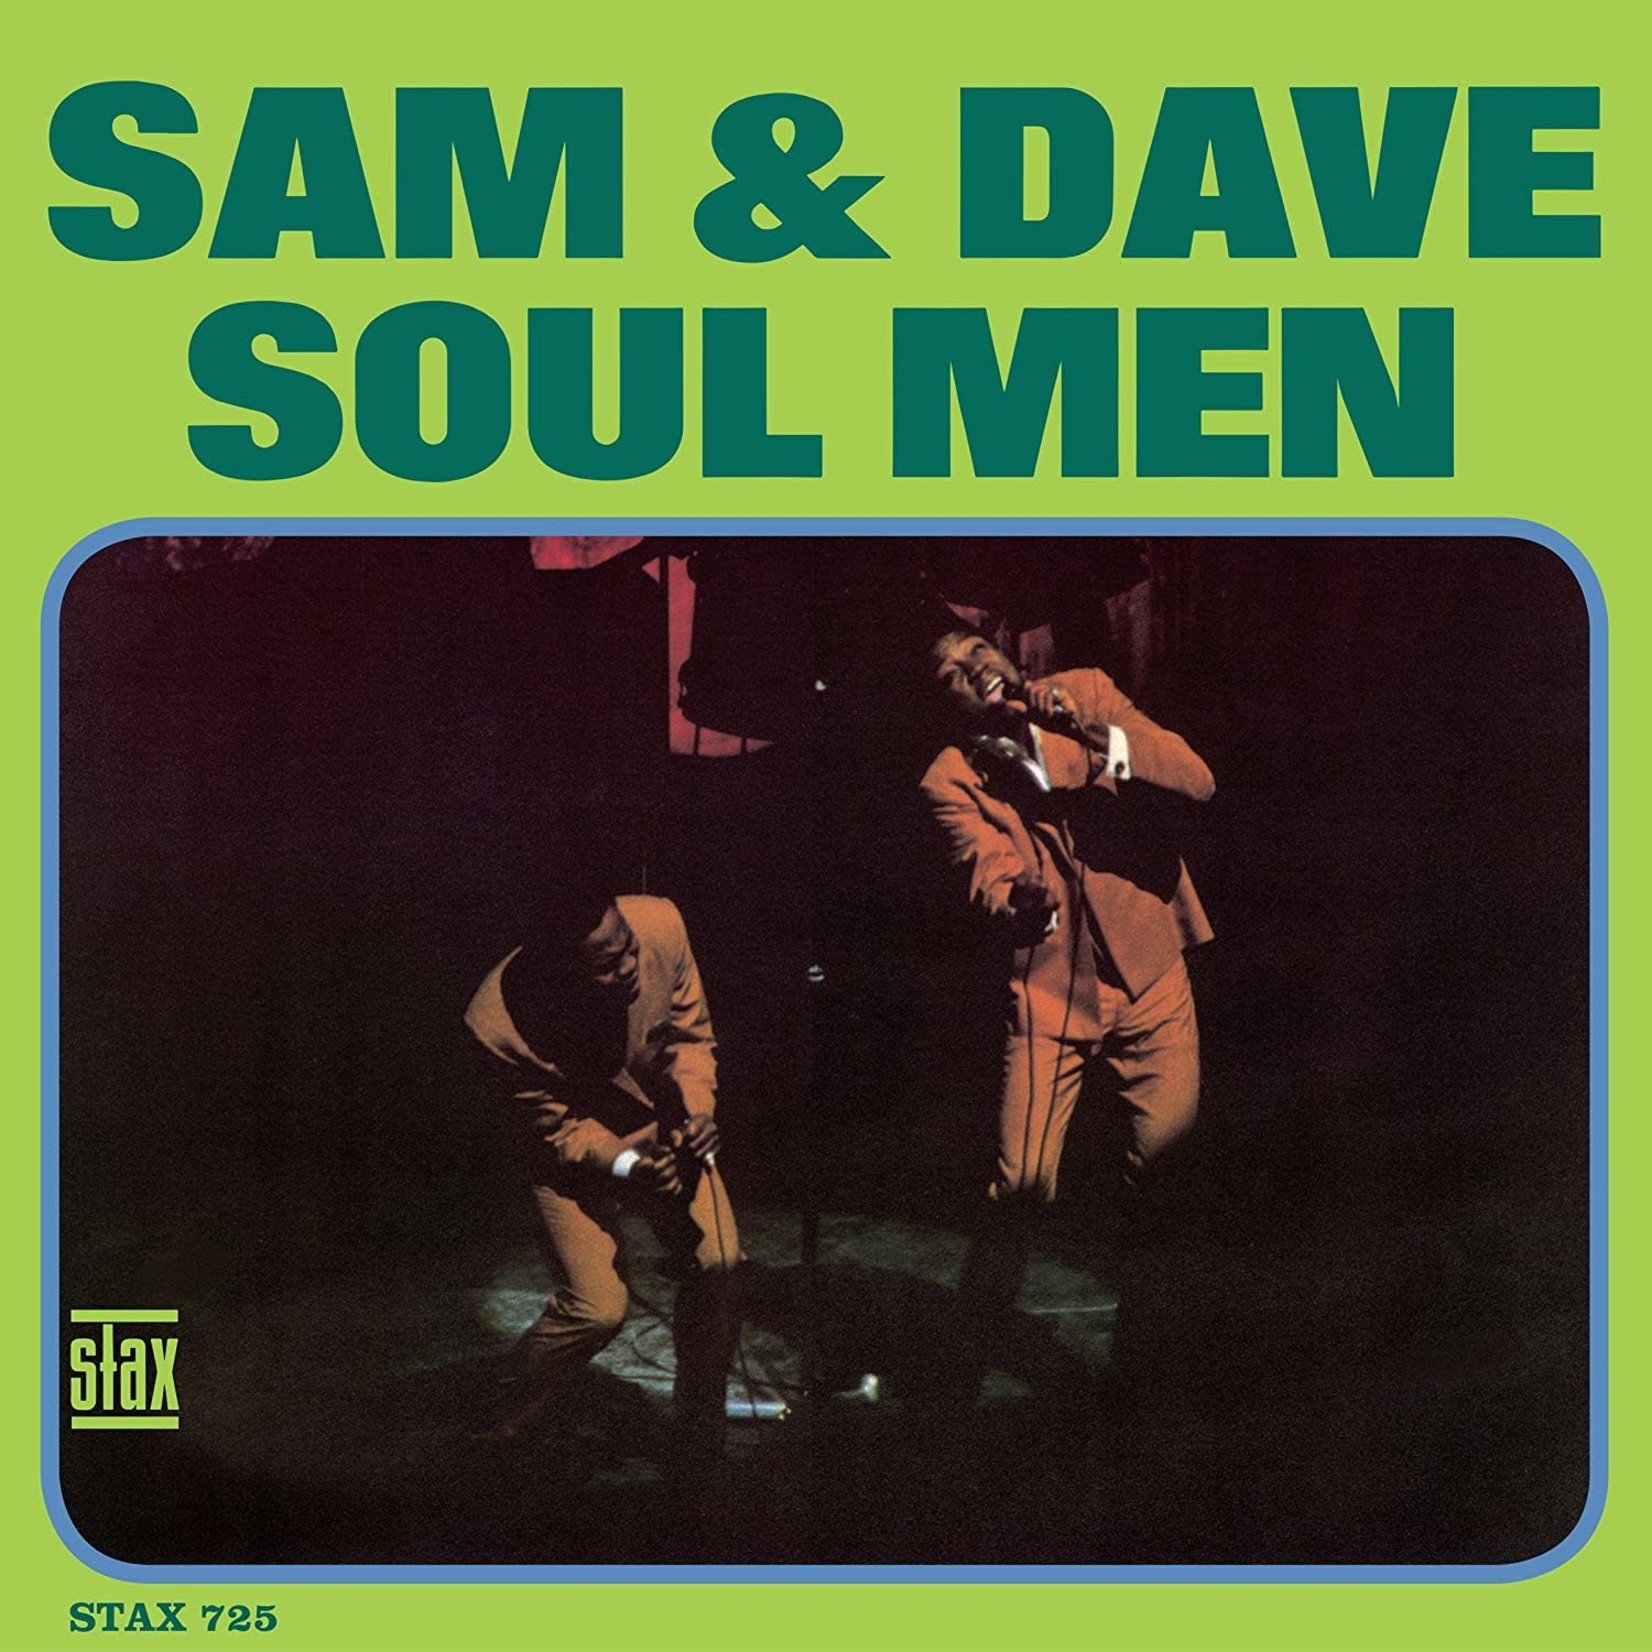 Sam & Dave - Soul Man